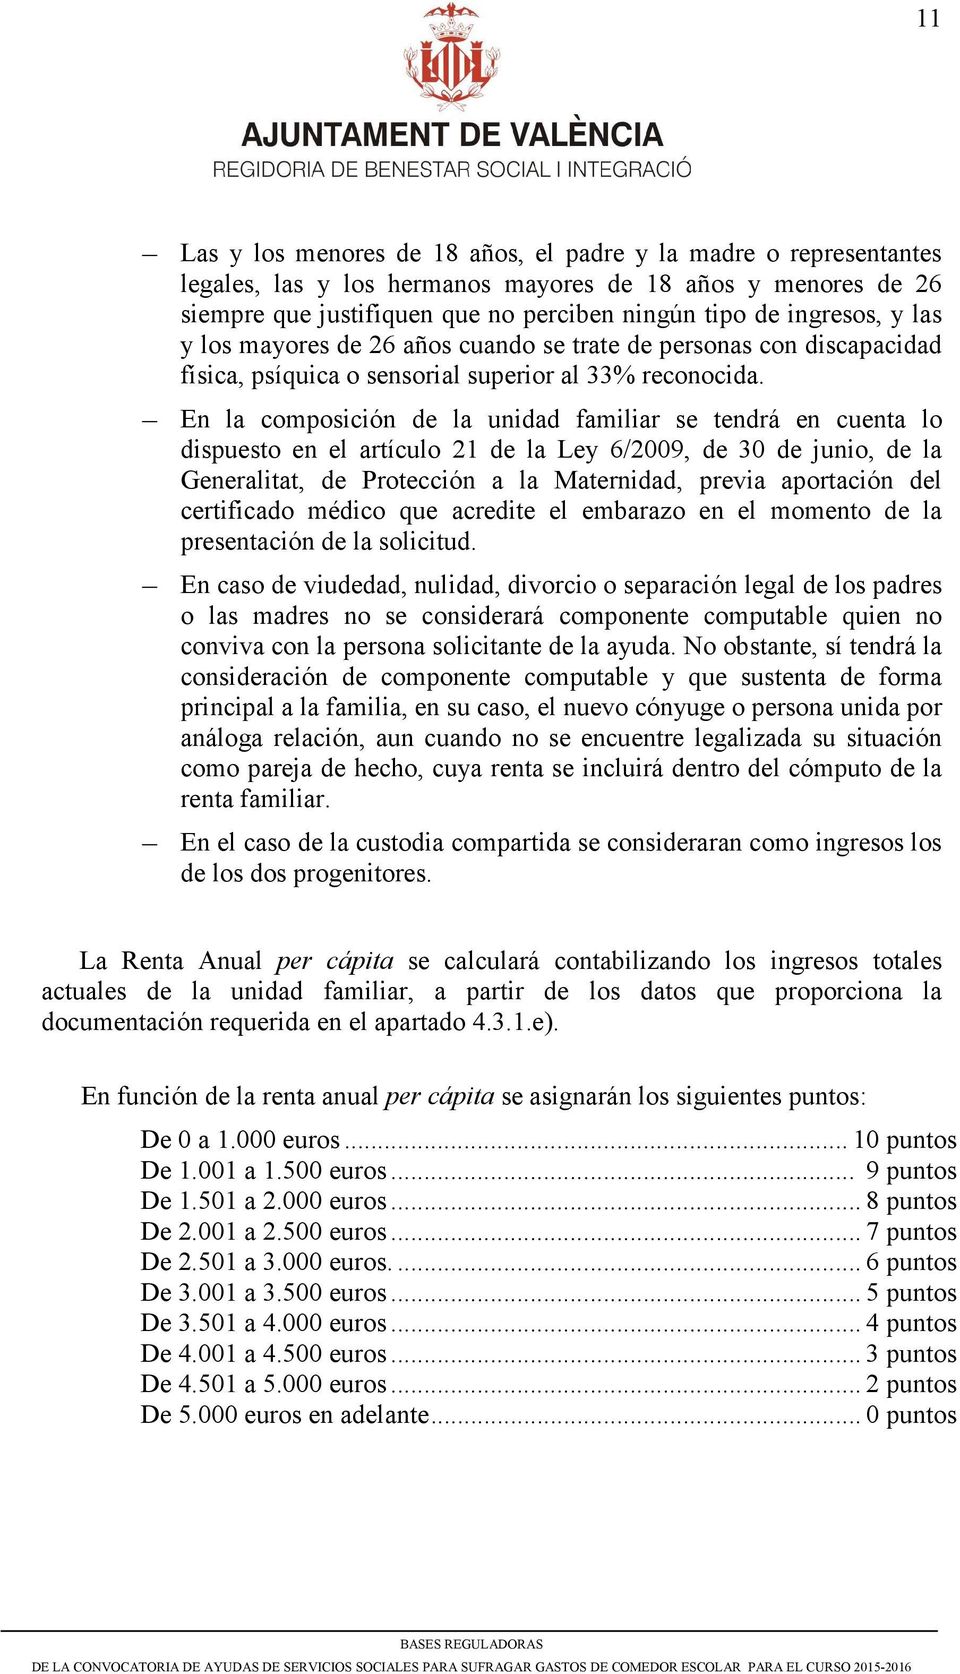 En la composición de la unidad familiar se tendrá en cuenta lo dispuesto en el artículo 21 de la Ley 6/2009, de 30 de junio, de la Generalitat, de Protección a la Maternidad, previa aportación del